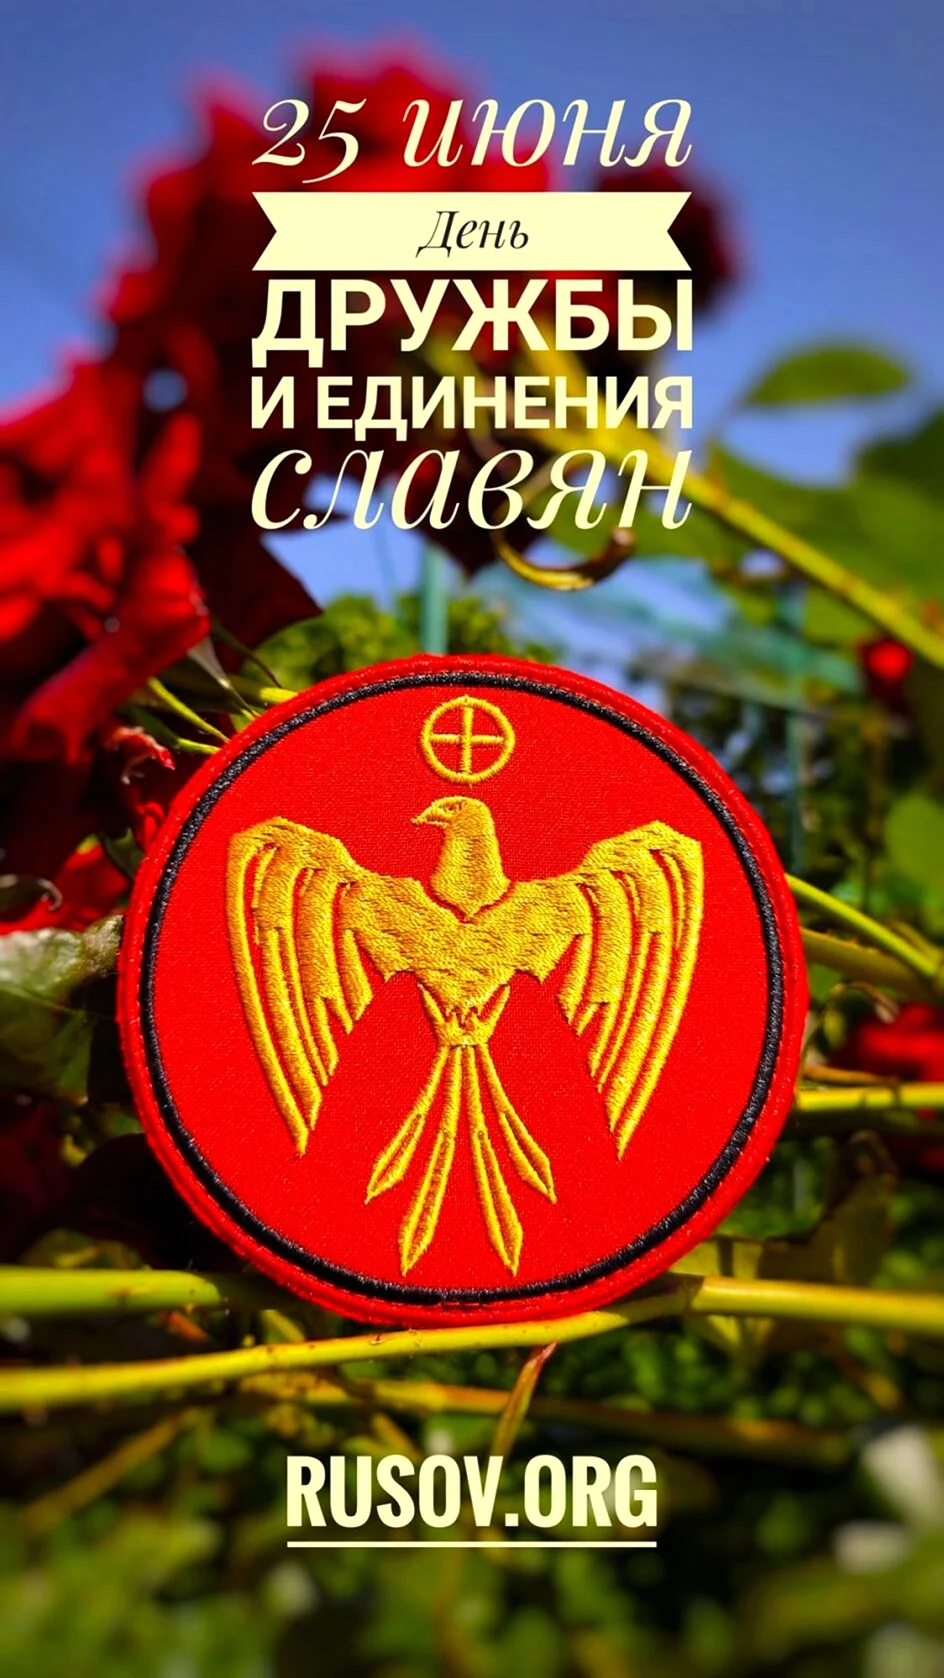 Русско-славянское объединение и Возрождение. Поздравление